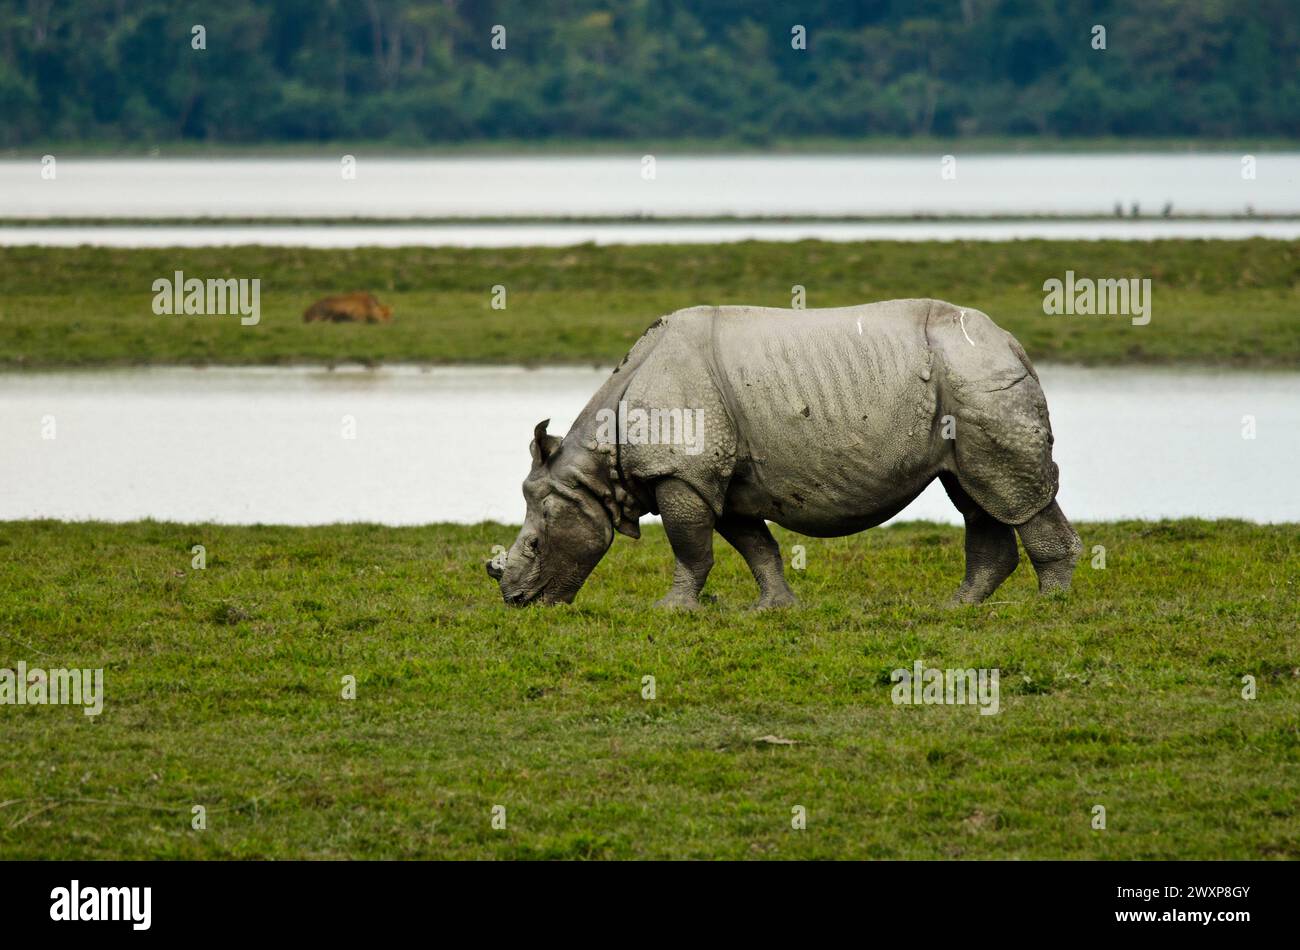 Le rhinocéros indien (Rhinoceros unicornis), également connu sous le nom de grand rhinocéros à une corne, grand rhinocéros indien, ou rhinocéros indien en abrégé, obs Banque D'Images